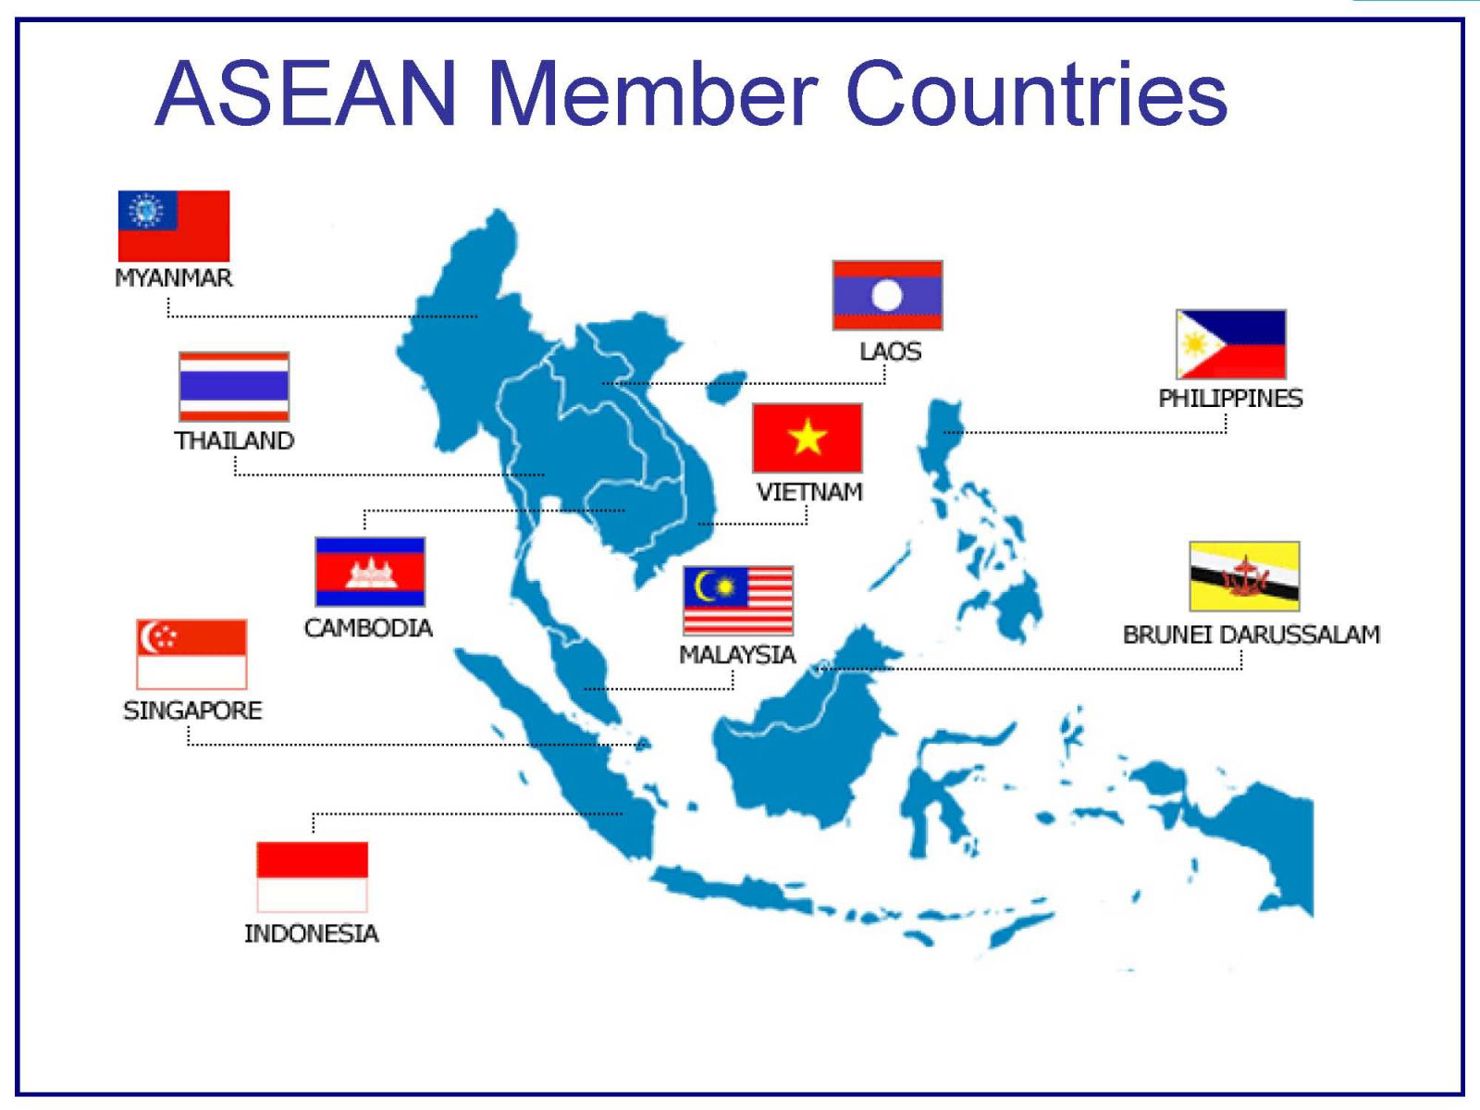  Đông Nam Á vẫn là khu vực được nhiều nhà đầu tư ưu tiên trong danh mục đầu tư.